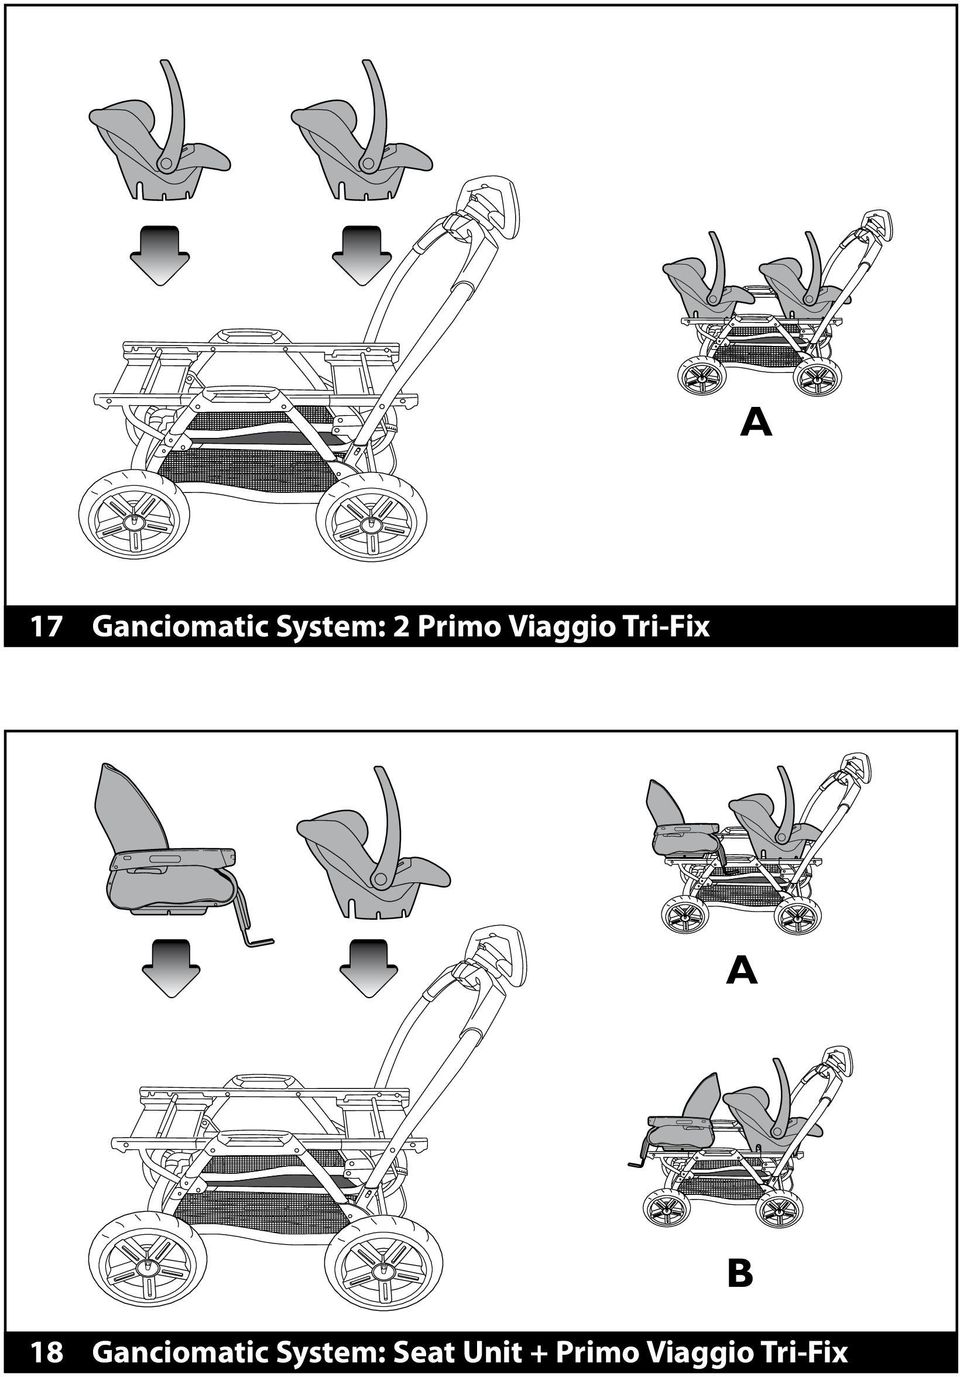 Ganciomatic System: Seat